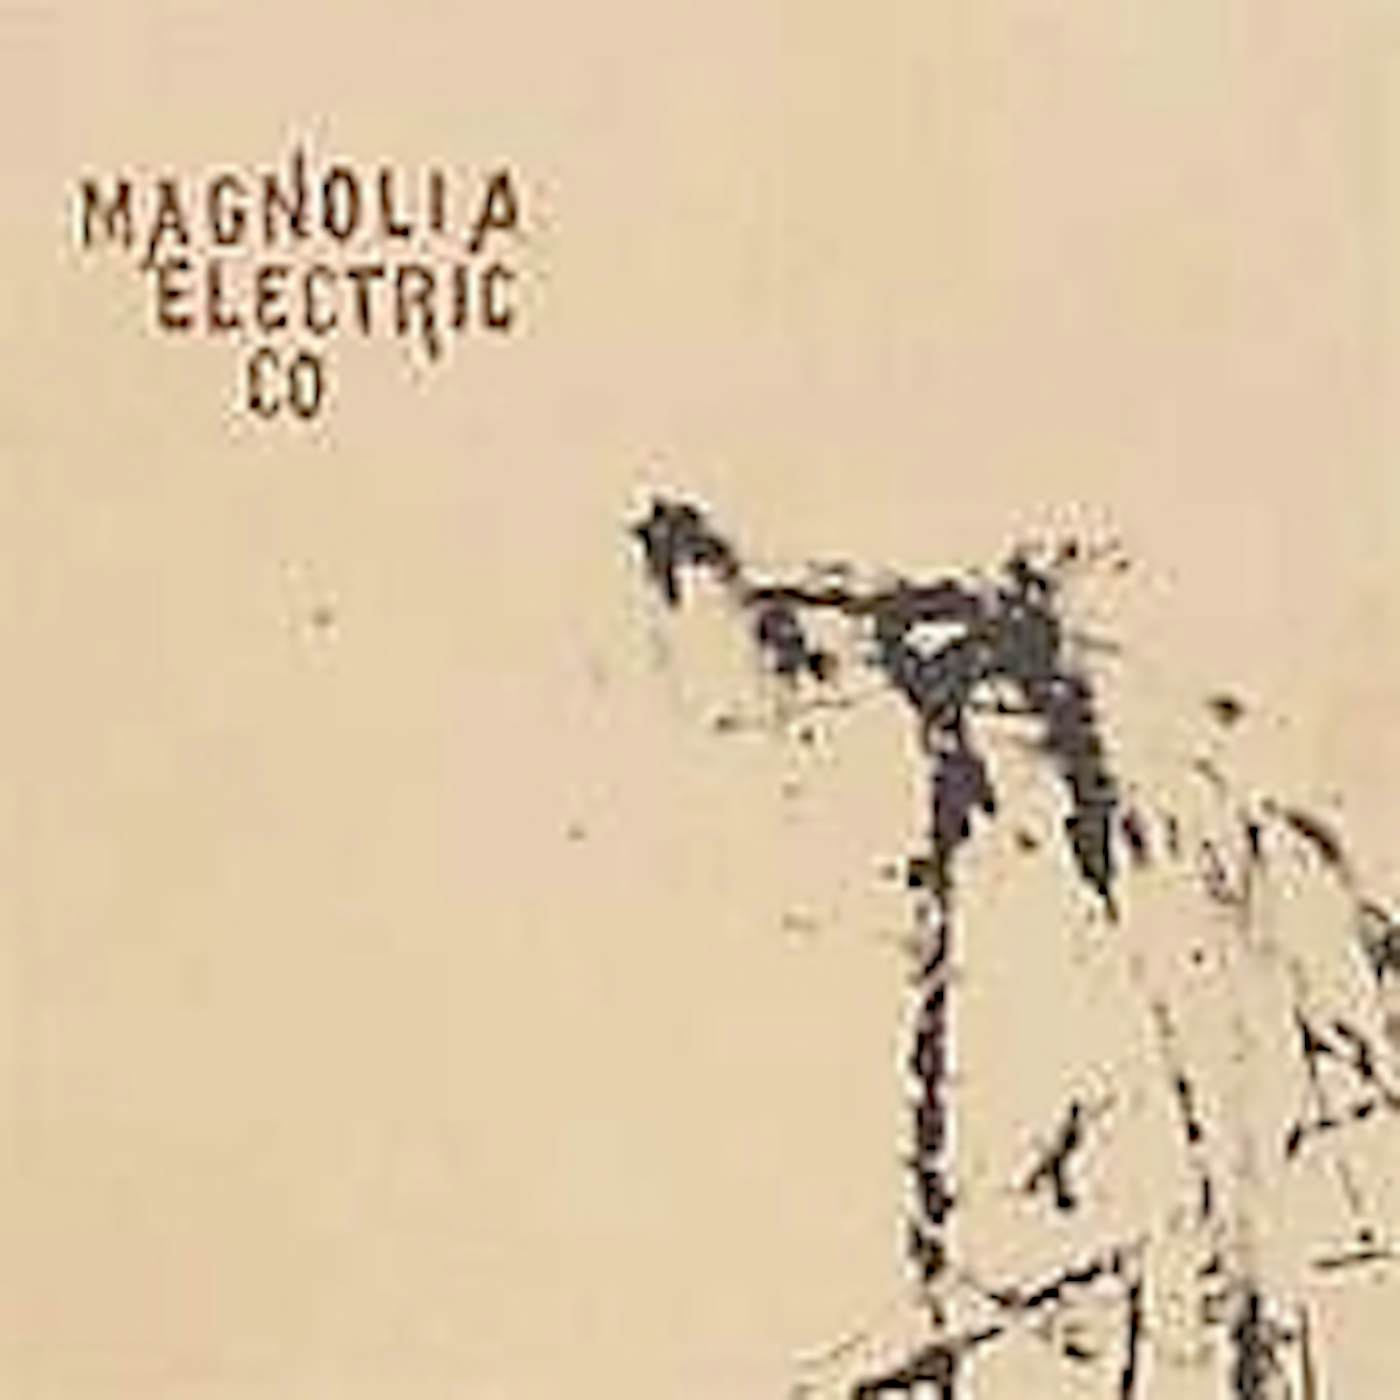 Magnolia Electric Co. TRIALS & ERRORS CD